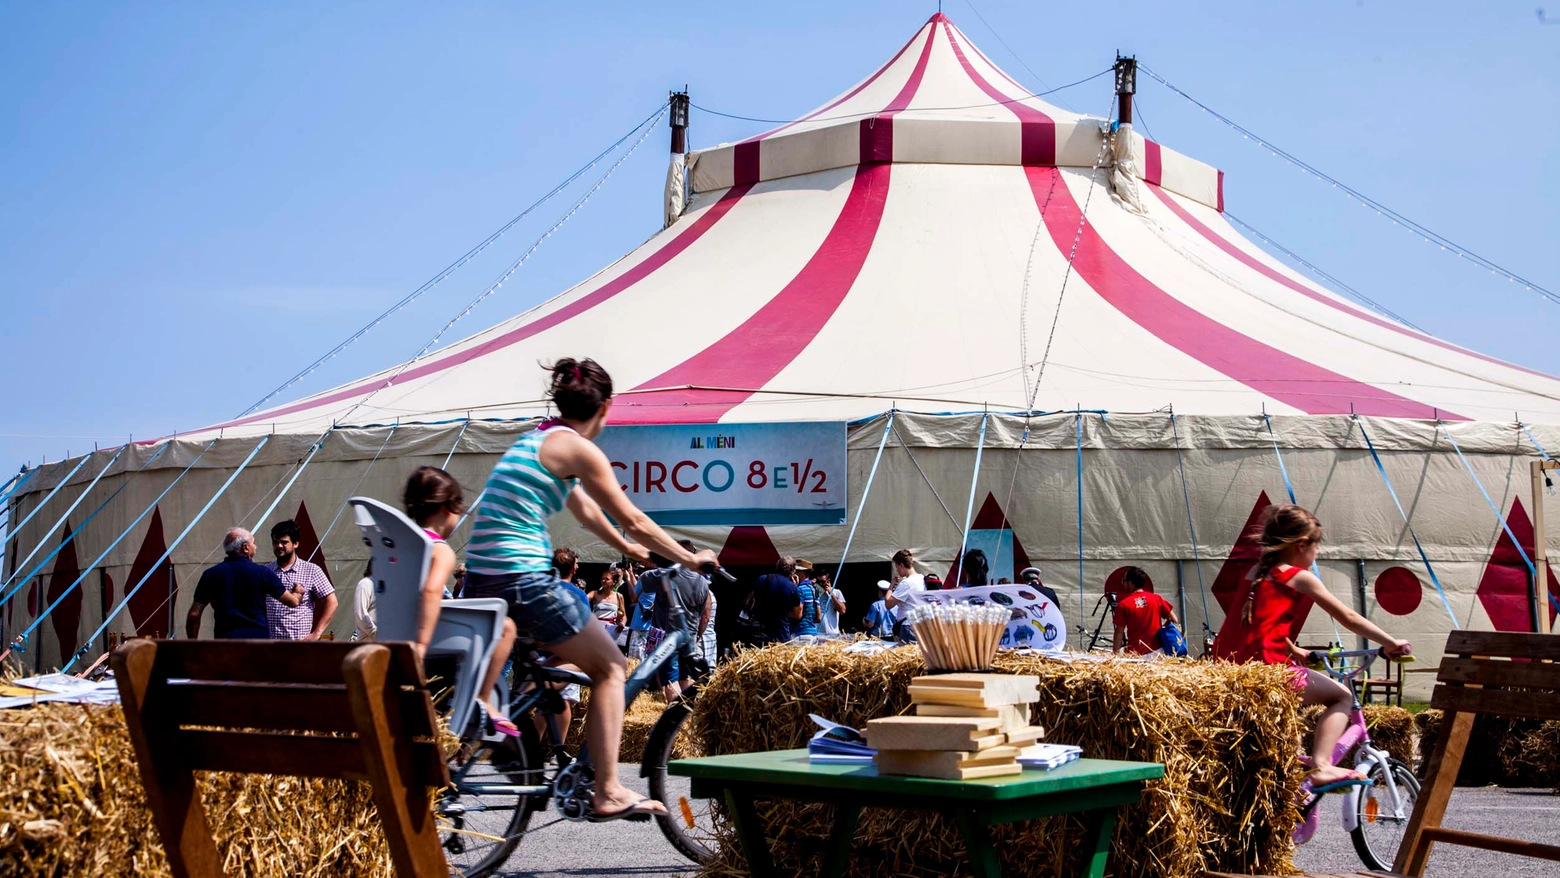 Al Menì a Rimini – Circo mercato di sapori e cose fatte con le mani